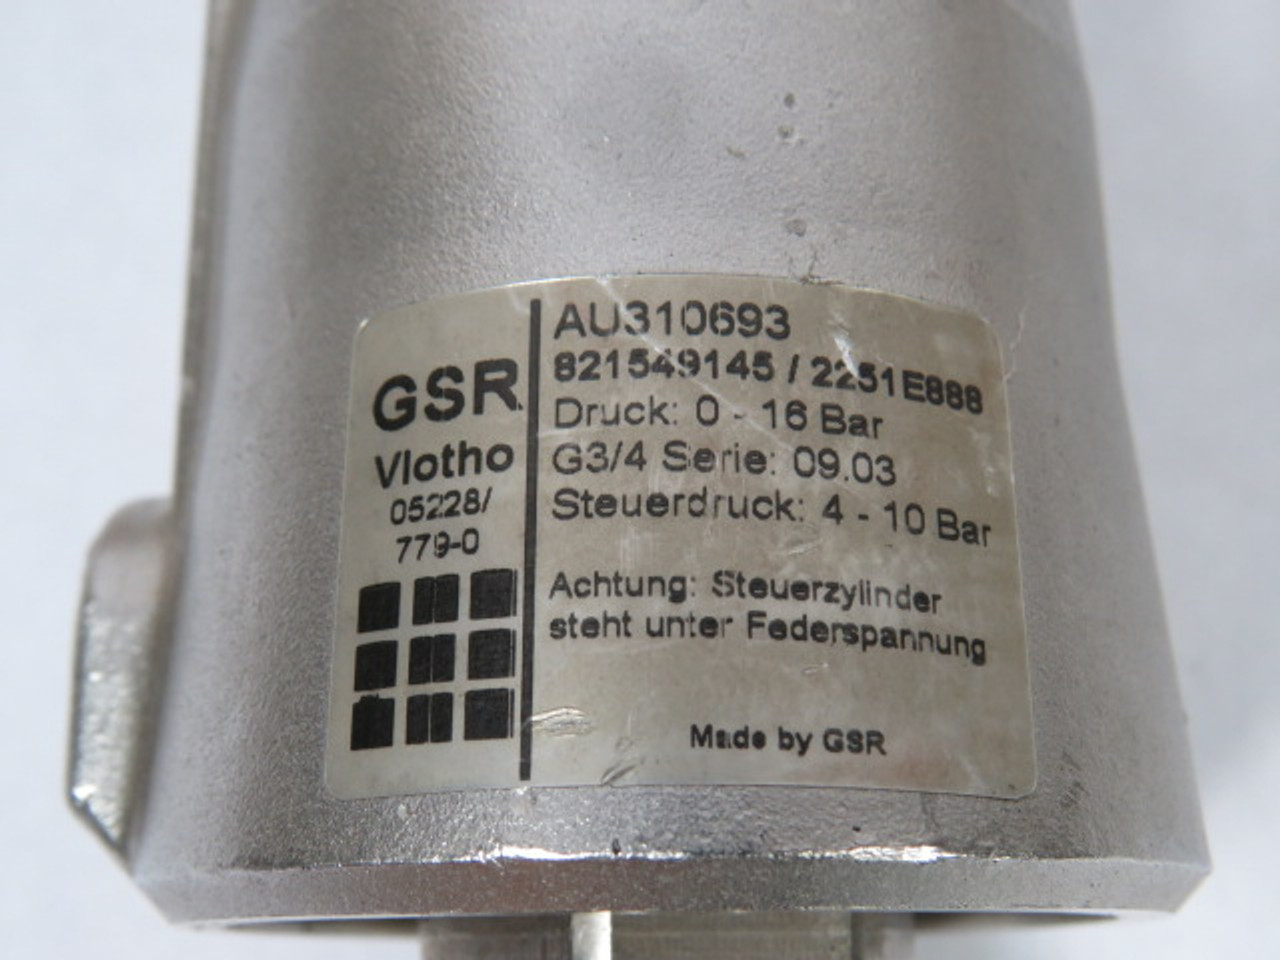 GSR Vlotho 821549145 Valve 0-16Bar G3/4 USED